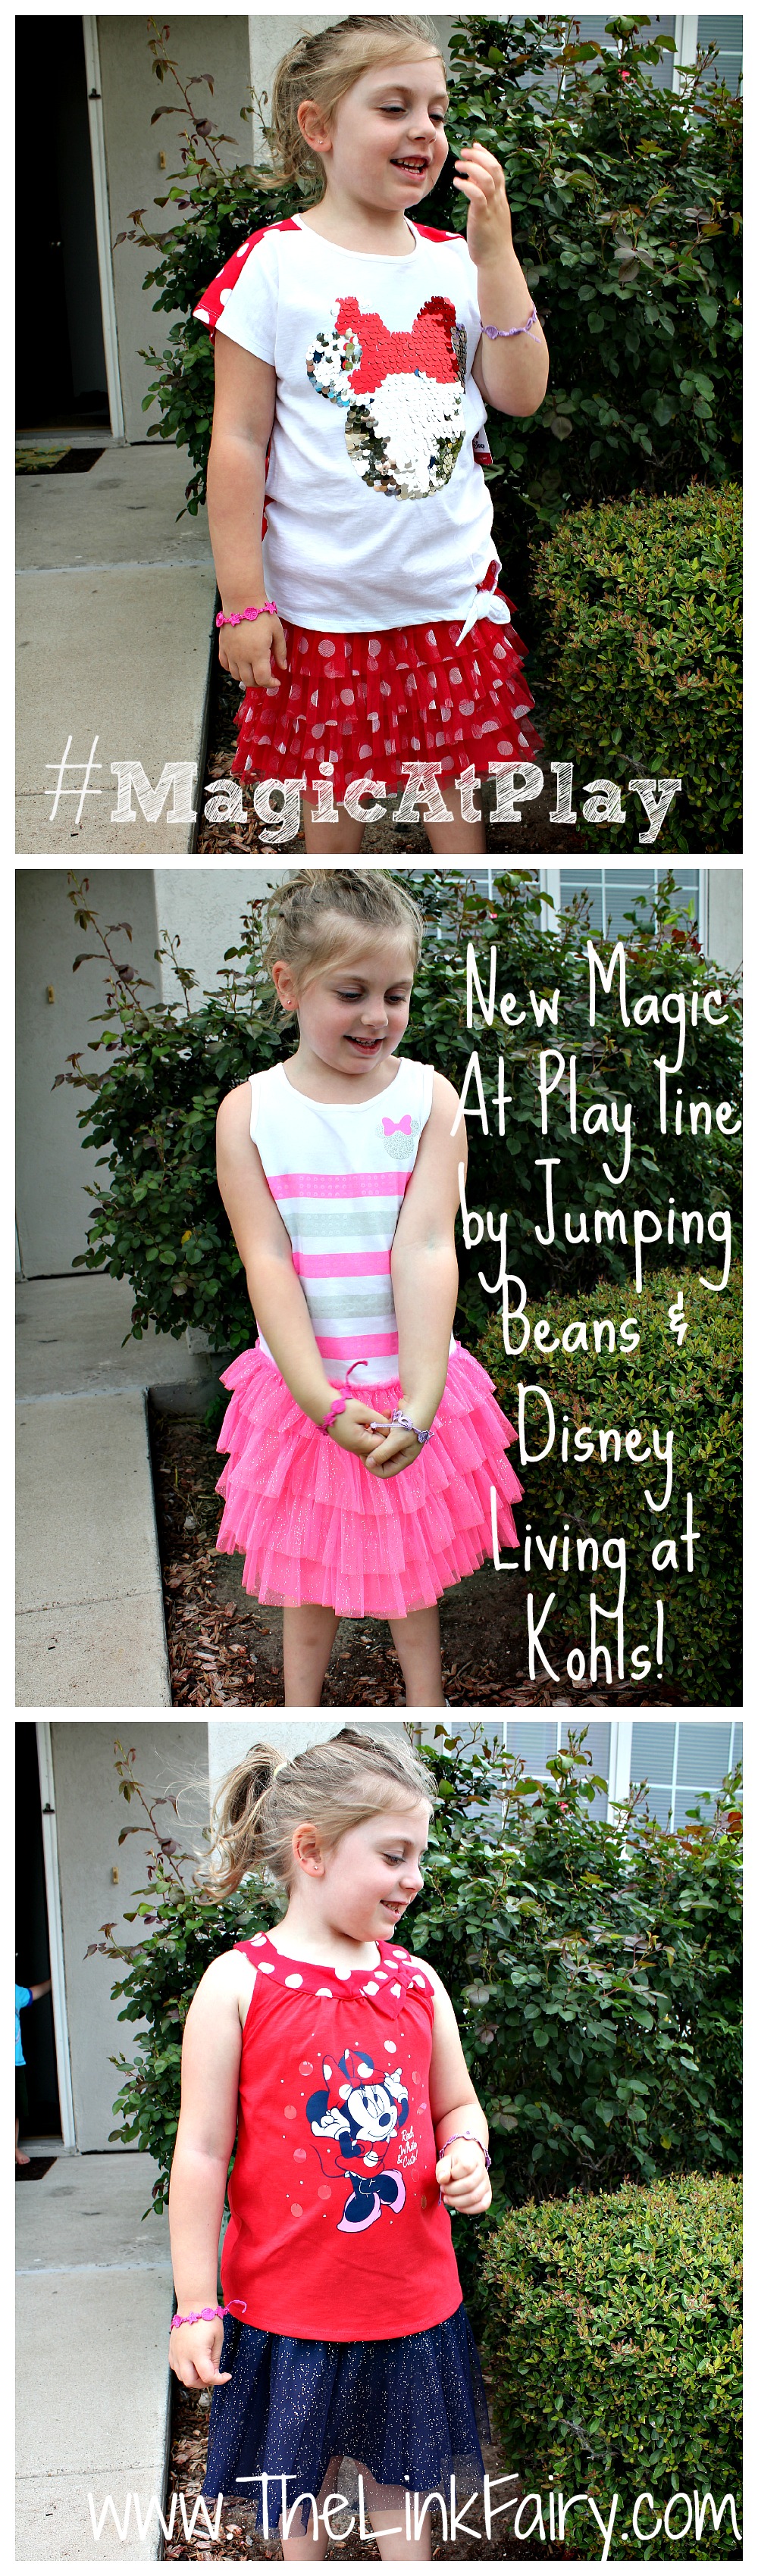 Jumping Beans & Disney Living Magic At Play line at Kohl's